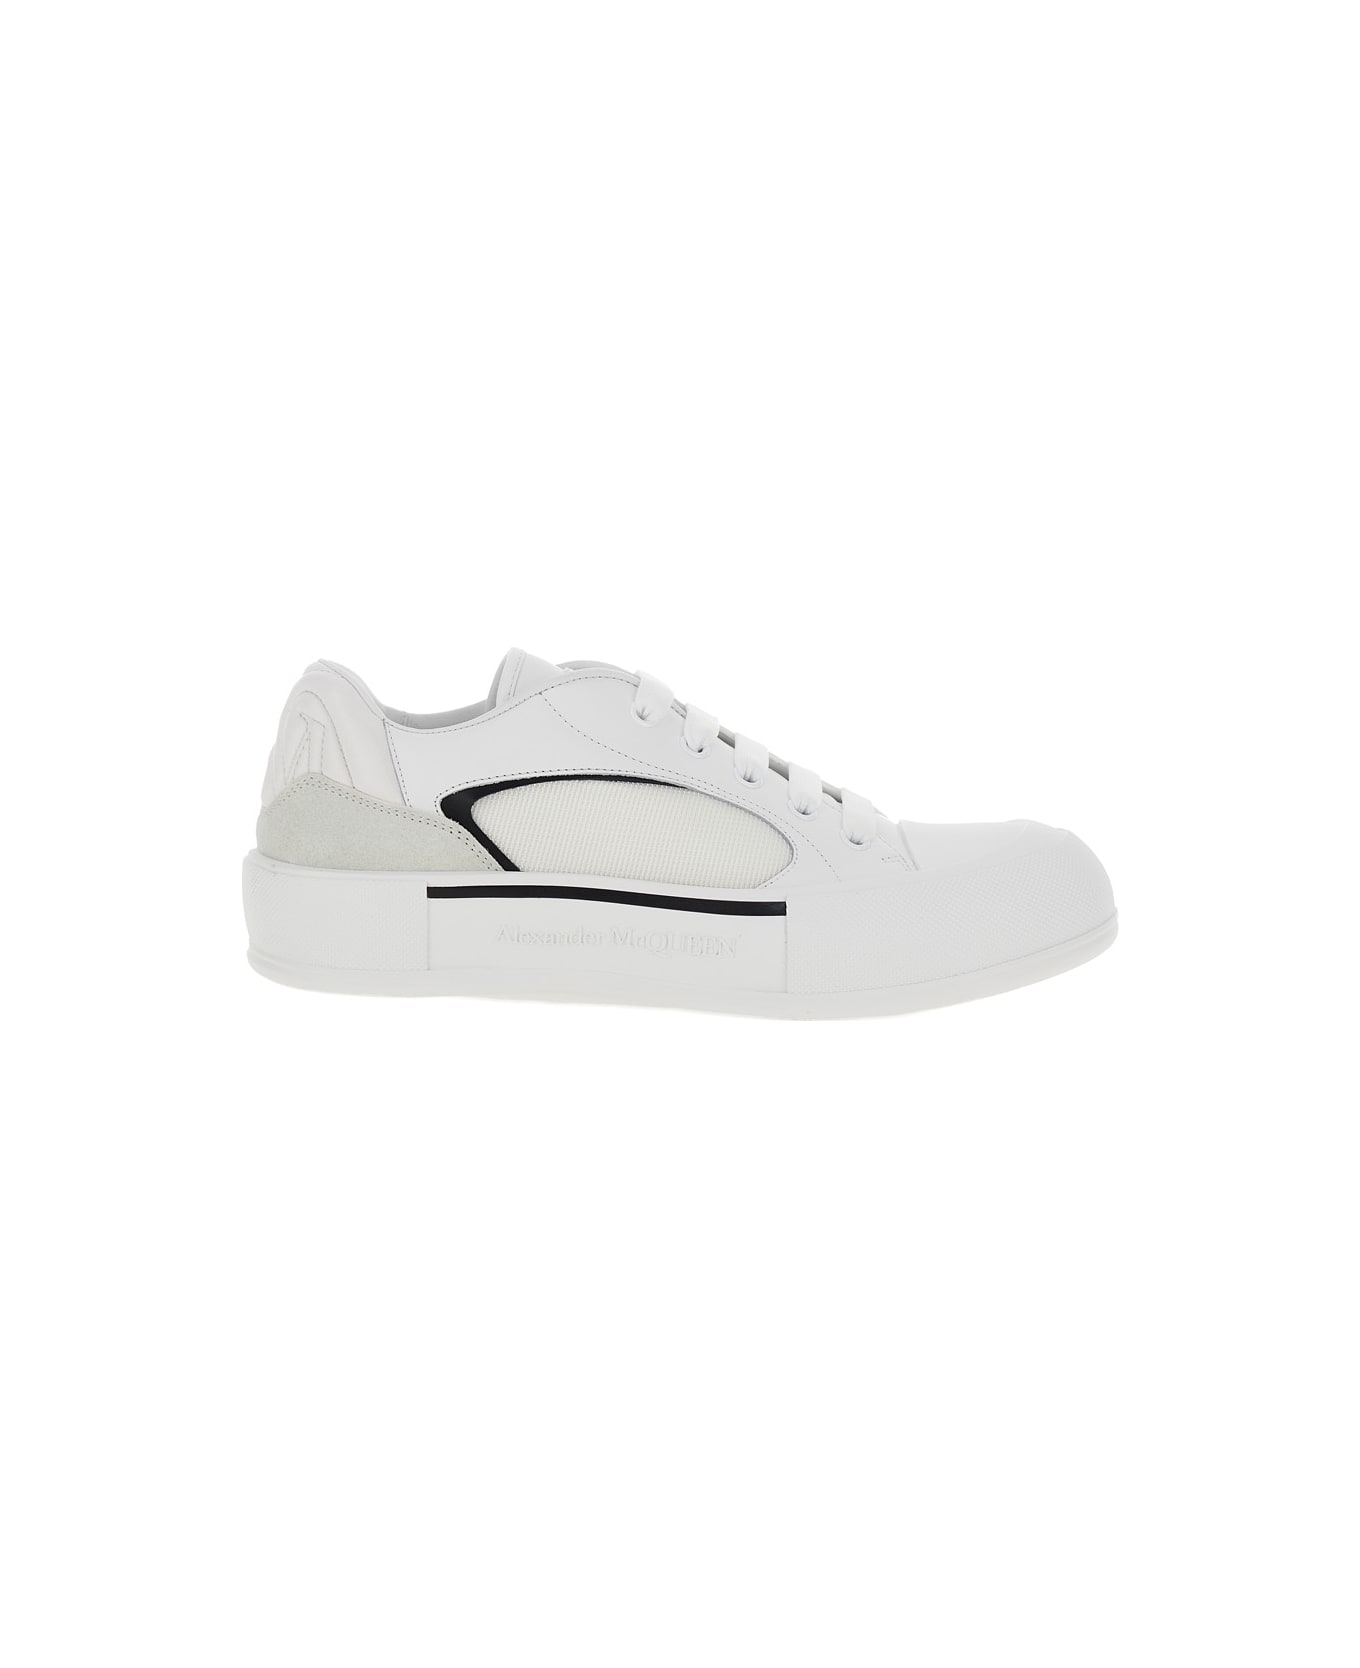 Alexander McQueen Cruis Sneaker - White